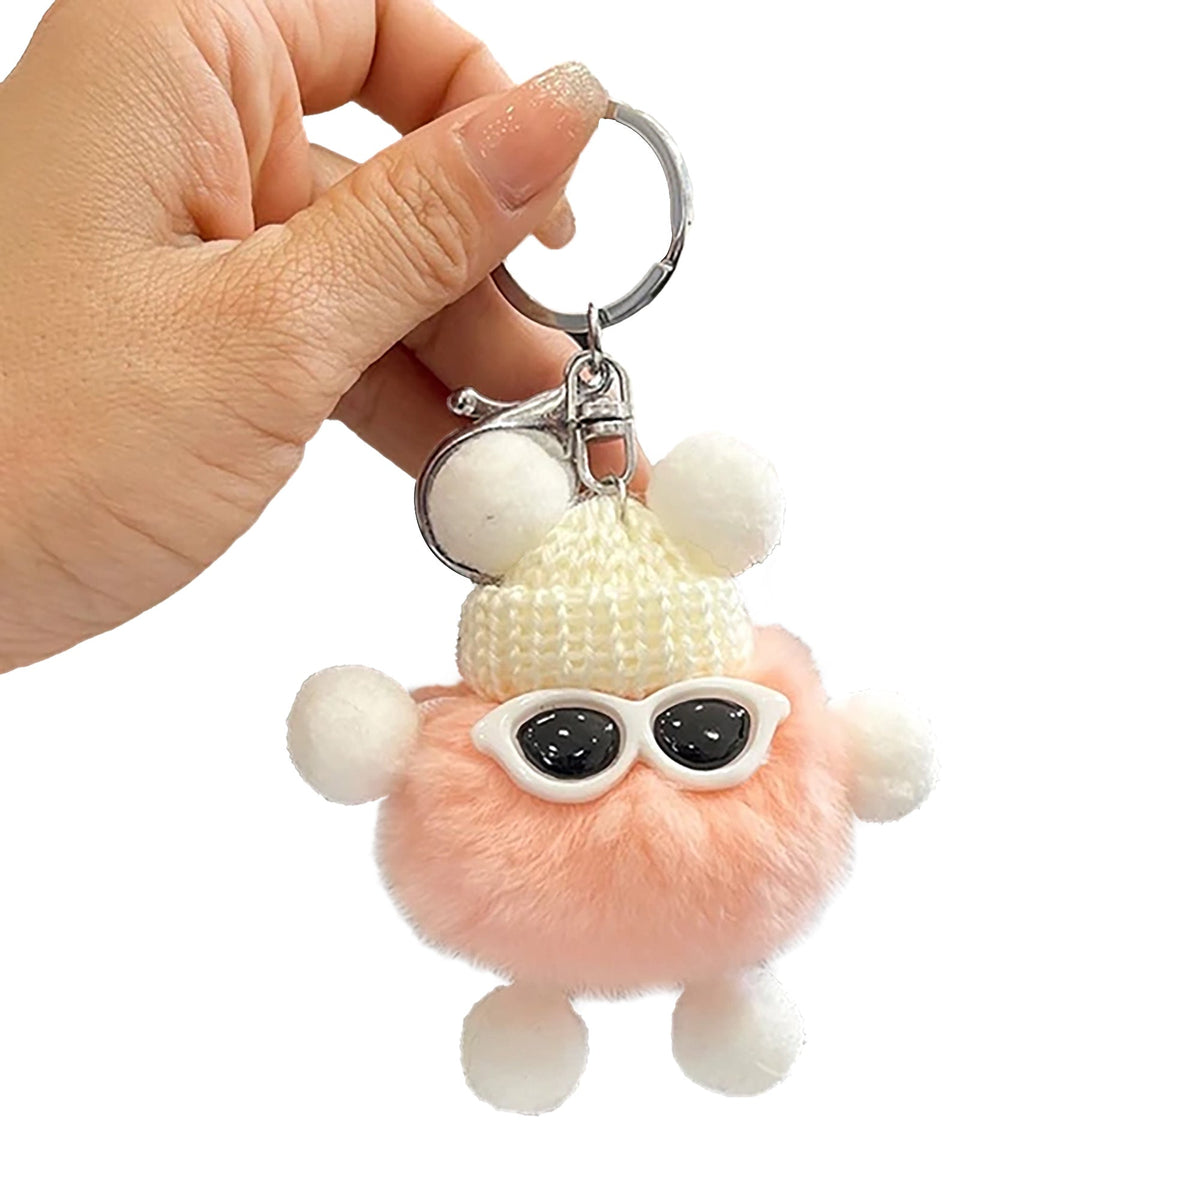 Shenzhen Huiboxin Electronics Co. Ltd Impulse Buying Fluffy Ball Plush Keychain, 1 Count